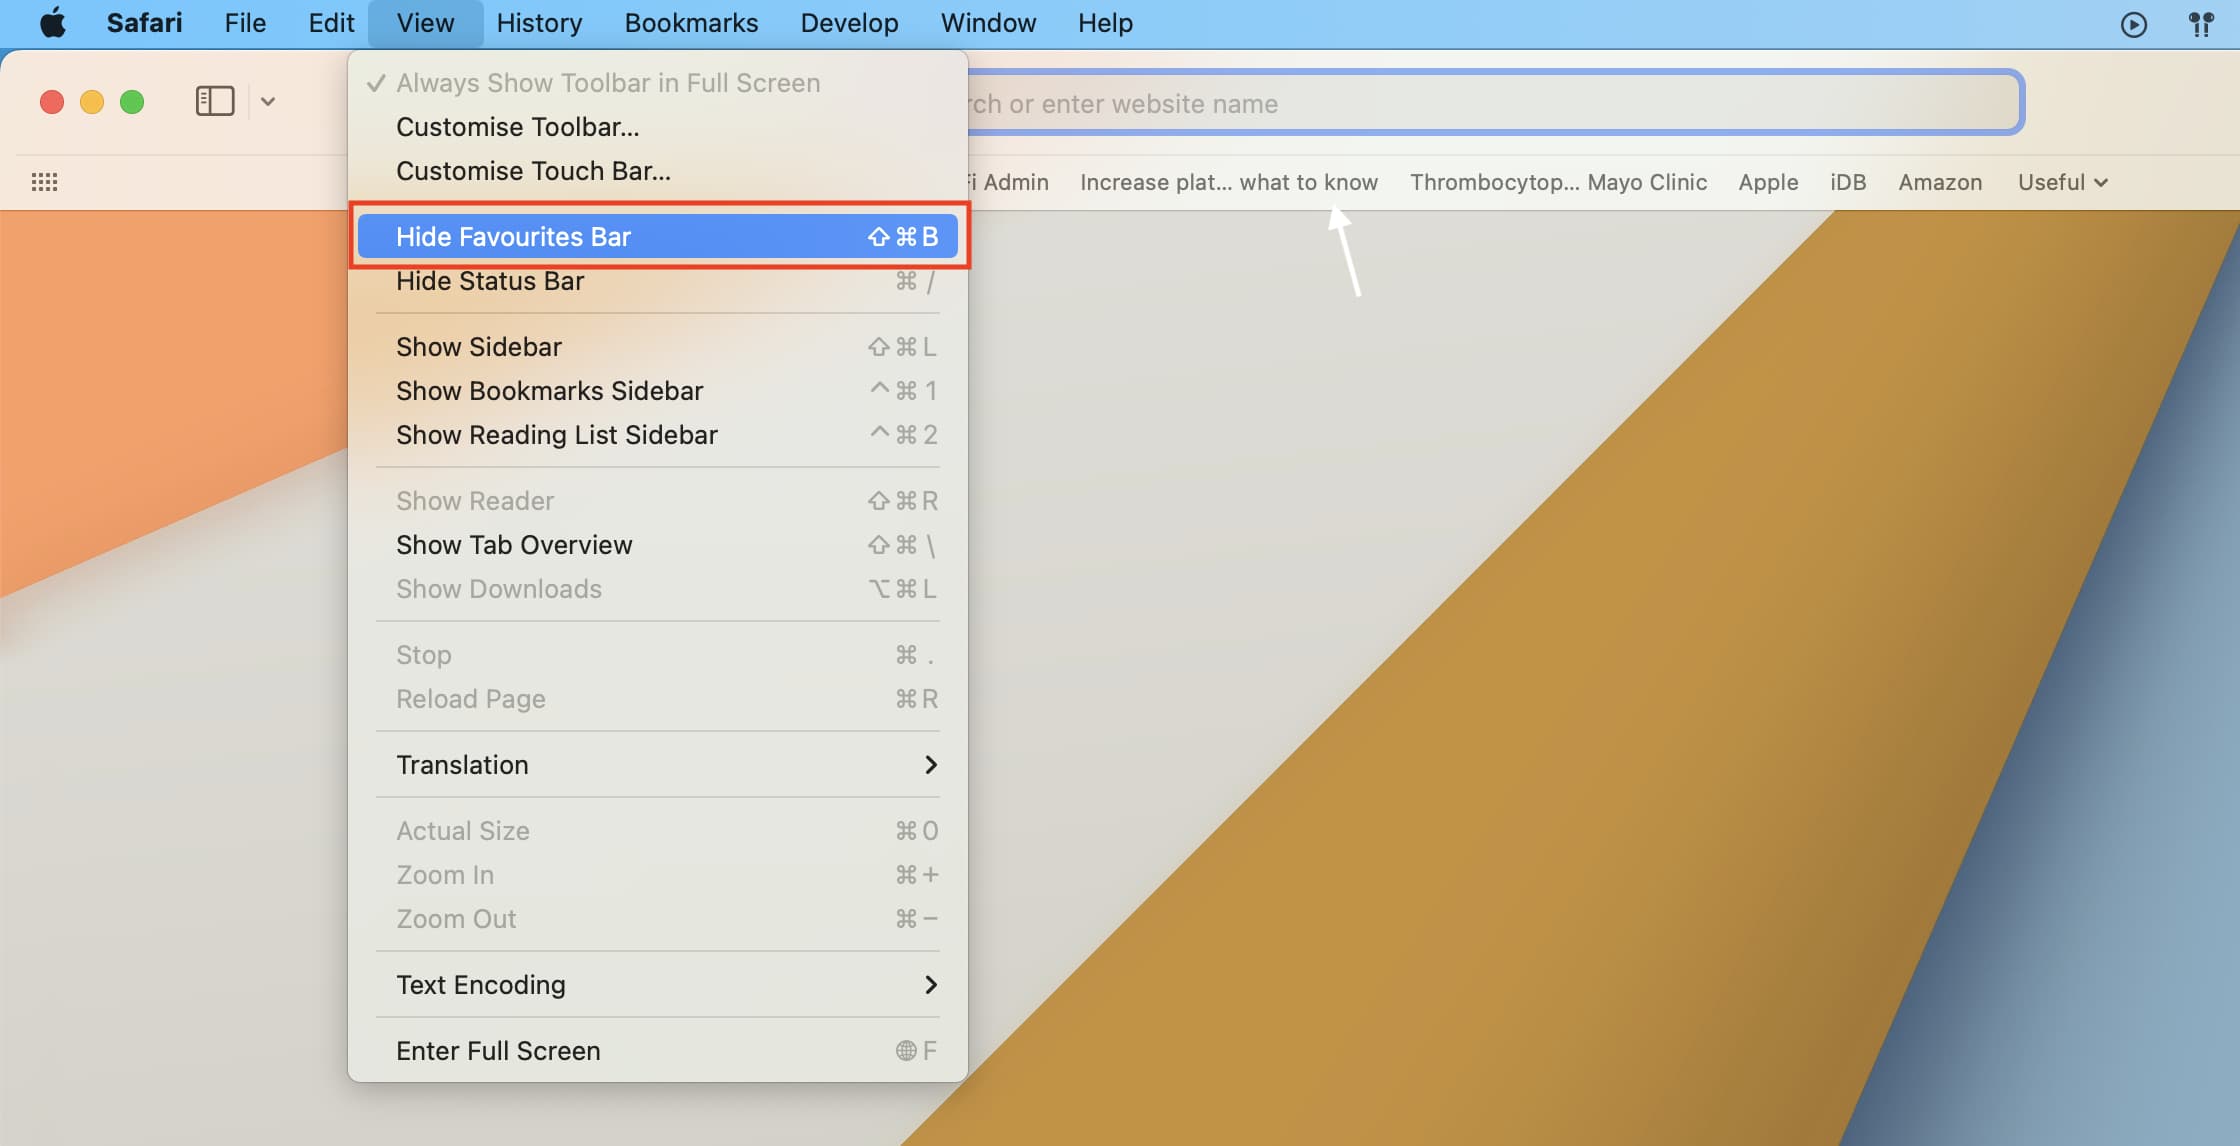 Hide Top Favorites Bar in Safari on Mac